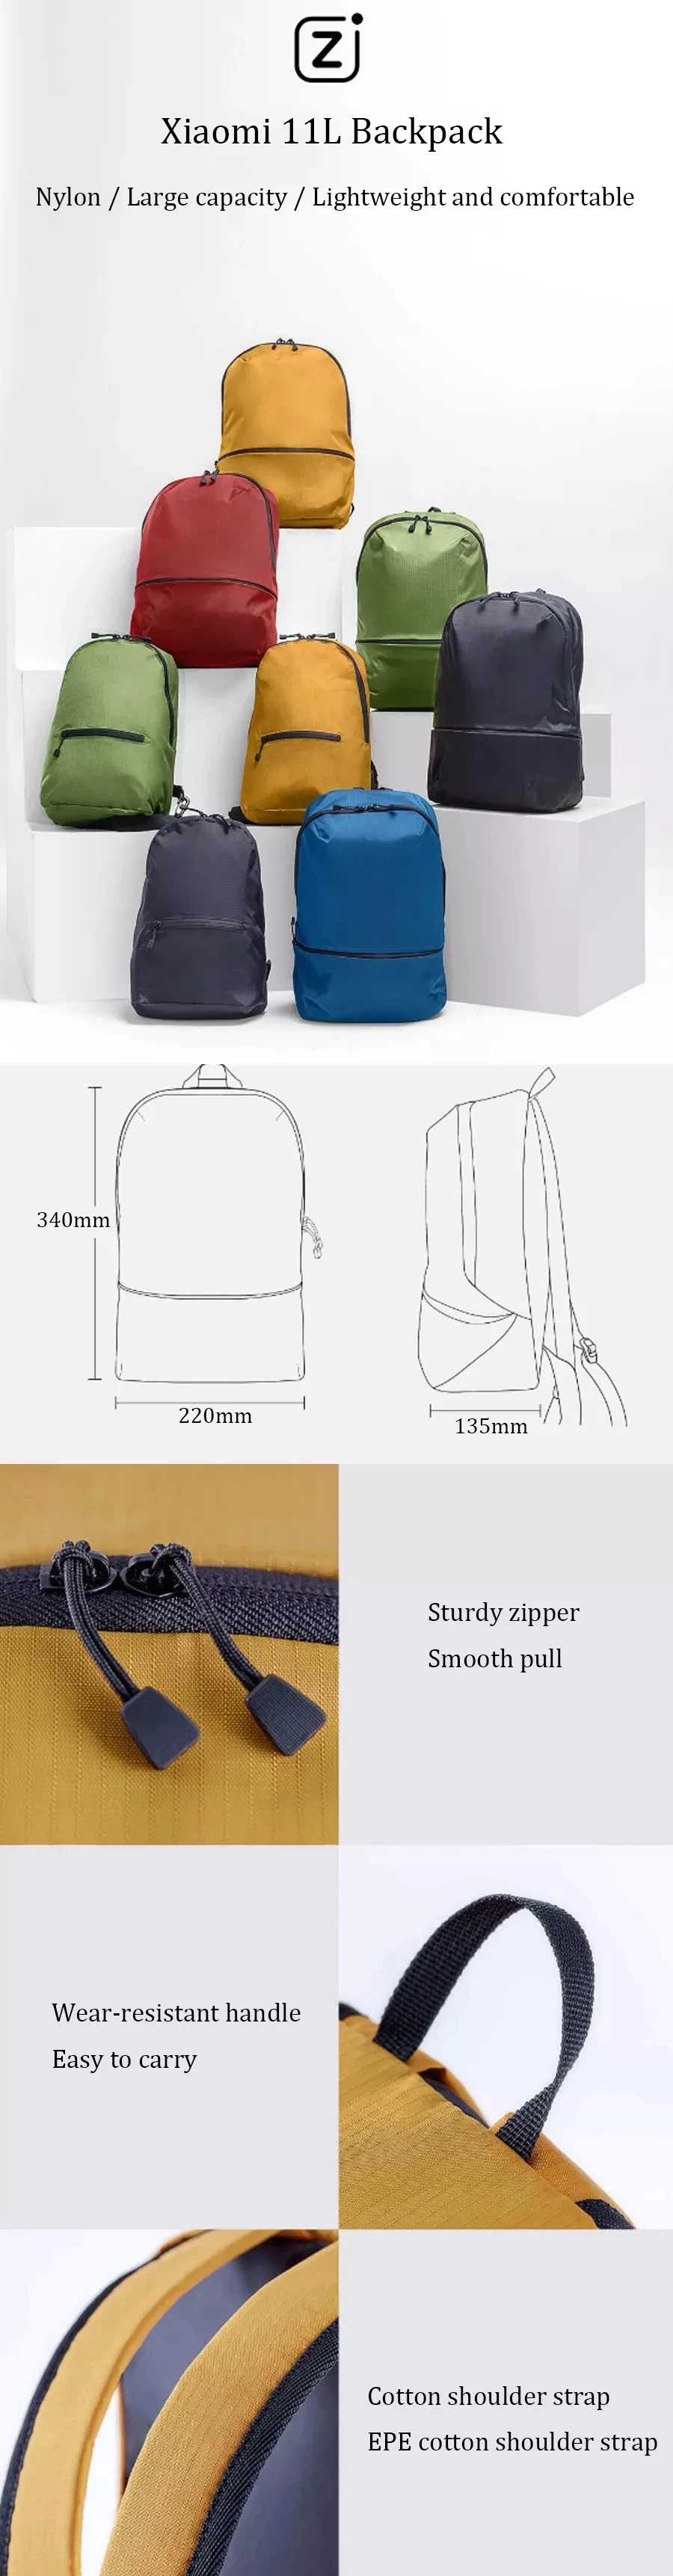 Xiaomi Mi, Zanjia, 11 л, рюкзак, сумка, 5 цветов, 150 г, легкий, городской, для отдыха, для спорта, нагрудная сумка, для мужчин, женщин, сумка на плечо, для путешествий